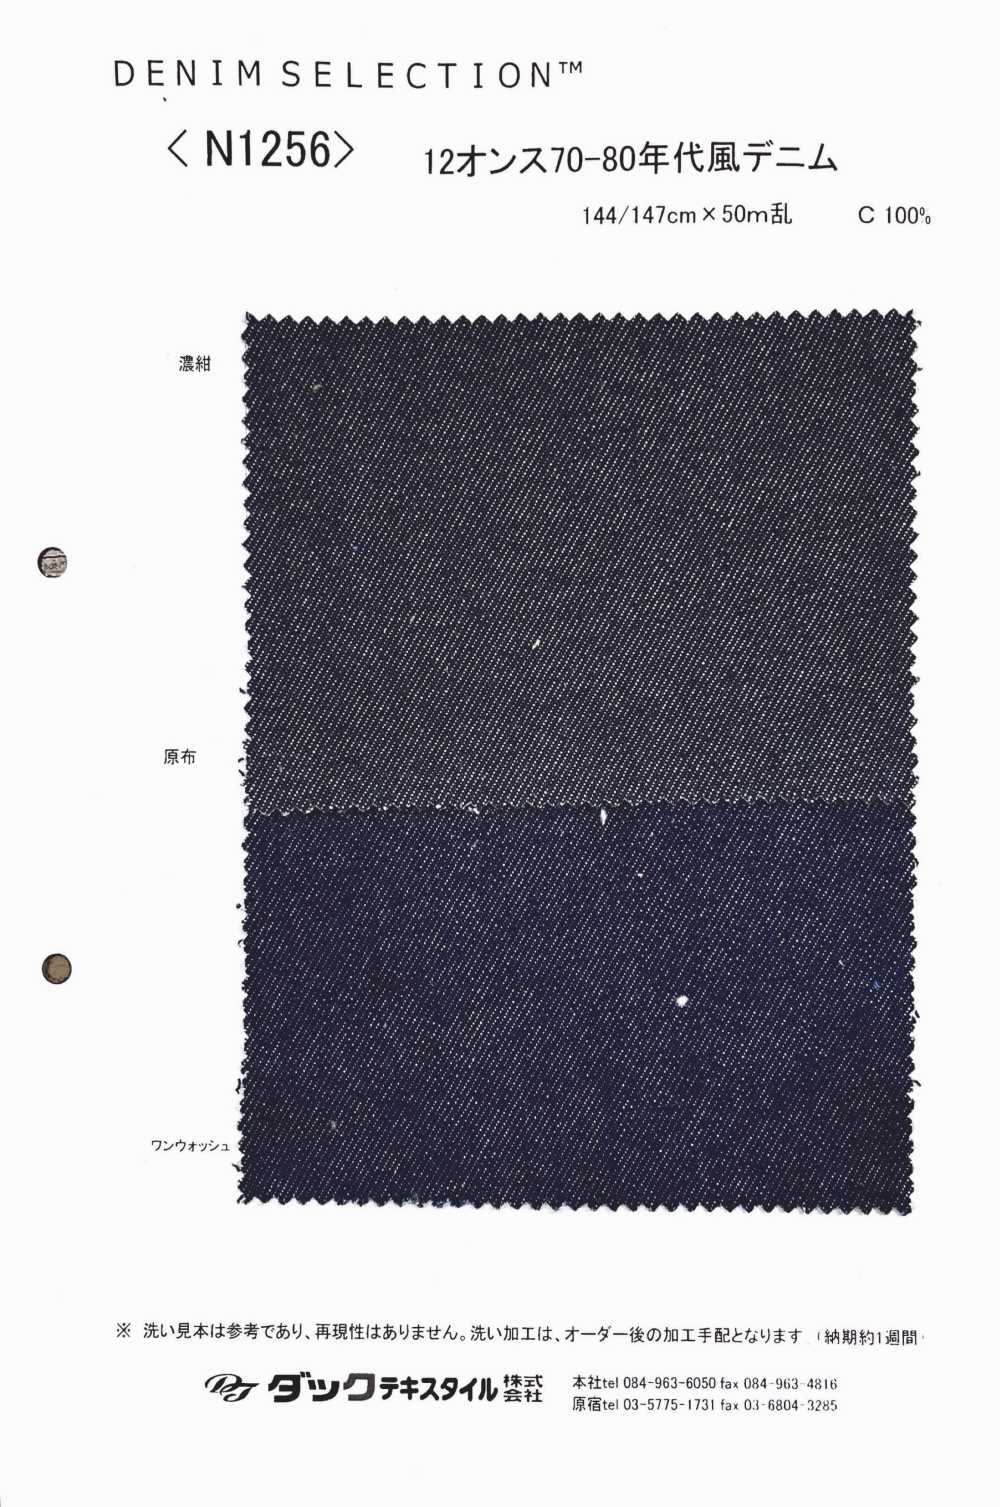 N1256 Mezclilla De Los Años 70-80 De 12 Onzas[Fabrica Textil] DUCK TEXTILE